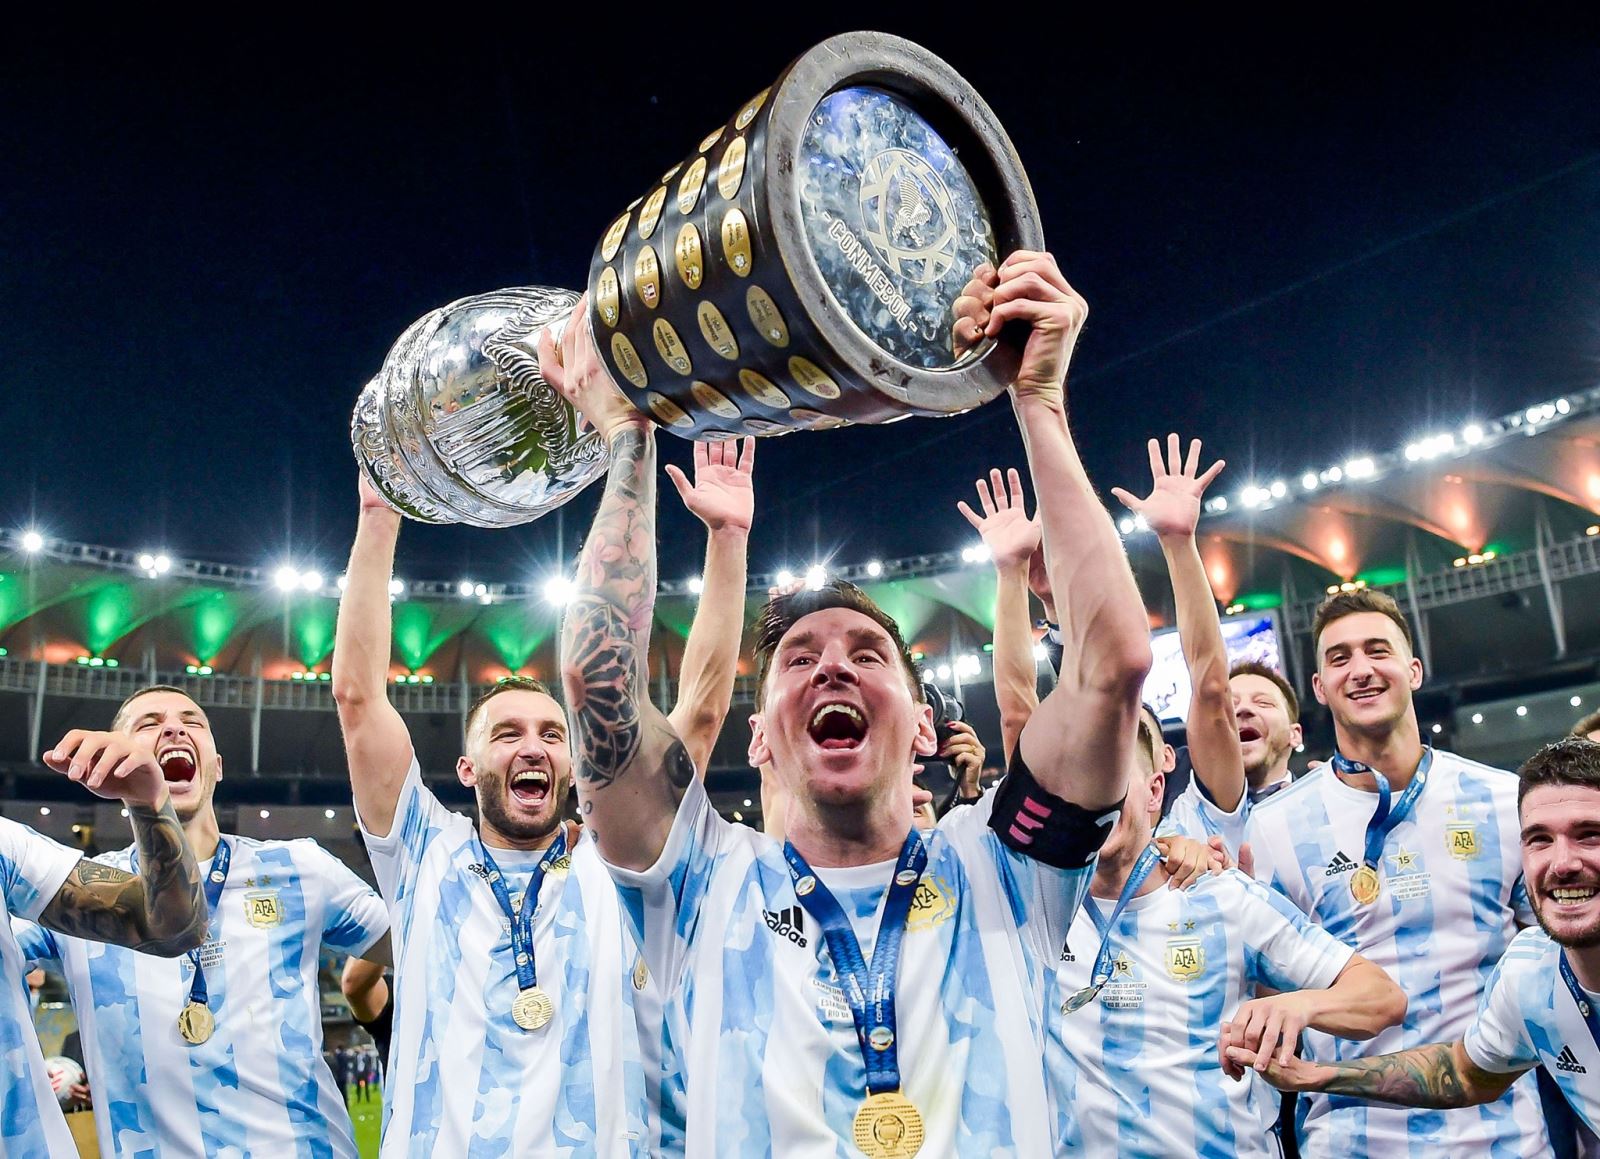 Messi, danh hiệu, Quả bóng Vàng thứ 7: Danh hiệu Quả bóng vàng thứ 7 do Messi giành được chắc chắn là một trong những sự kiện quan trọng nhất trong lịch sử bóng đá. Nếu bạn muốn biết thêm về câu chuyện sau vinh quang đó, hãy xem video của chúng tôi và khám phá thêm về các thành tích đáng kinh ngạc mà người hùng Argentina này đã đạt được.